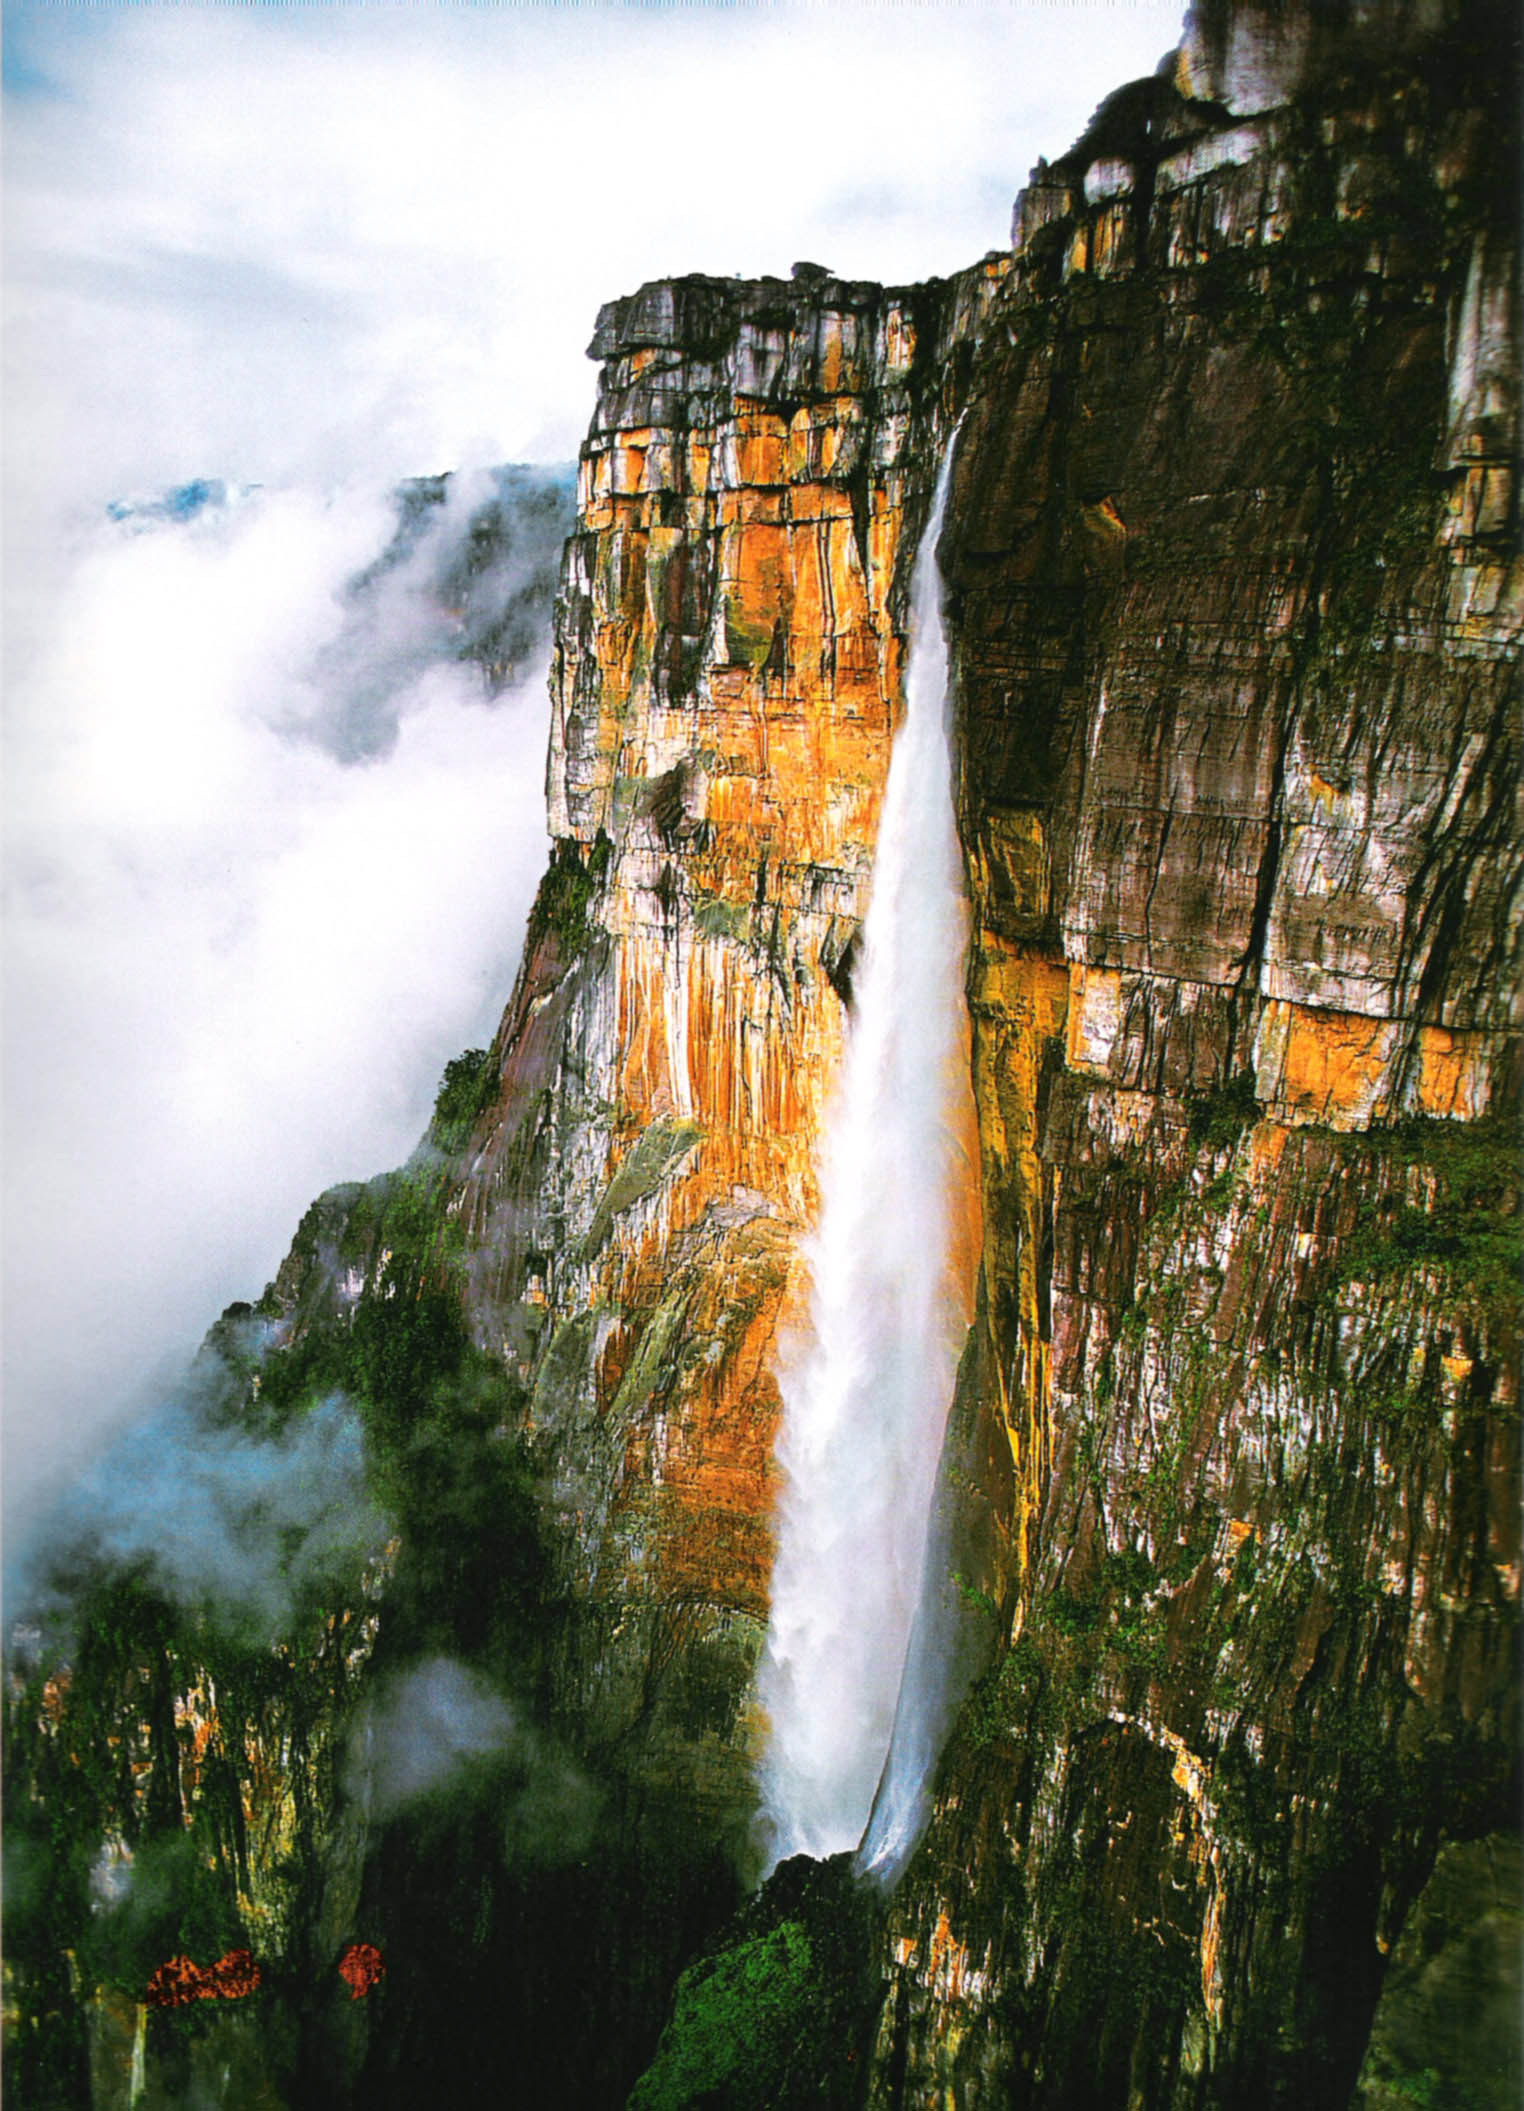 엔젤 폭포 앙헬폭포 Angel Falls 베네수엘라 낙차 979m 세계 최고 높이 네이버 블로그